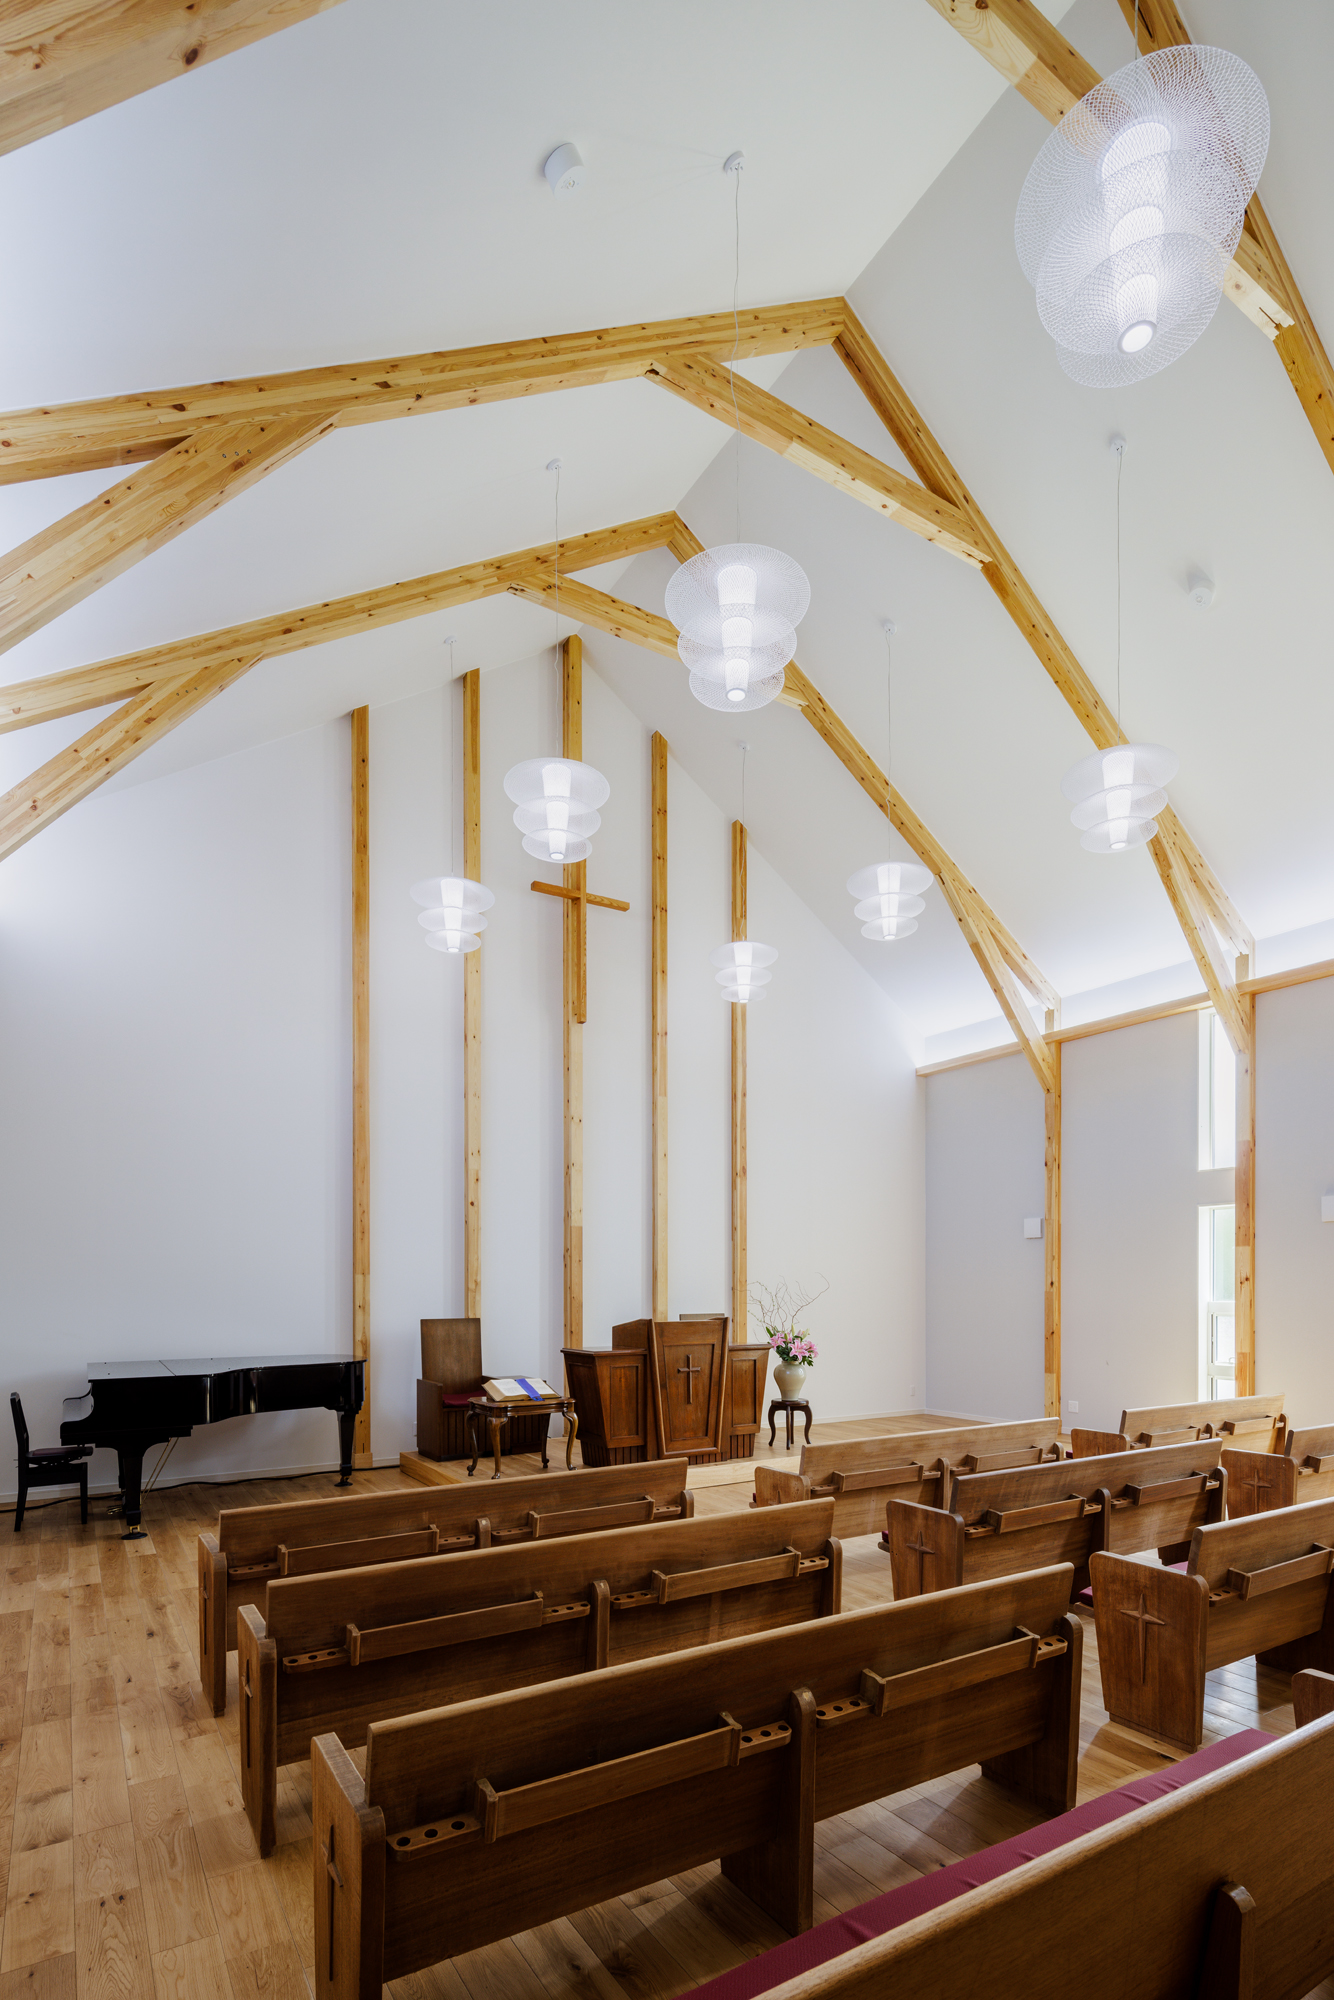 教会に木造が適している理由